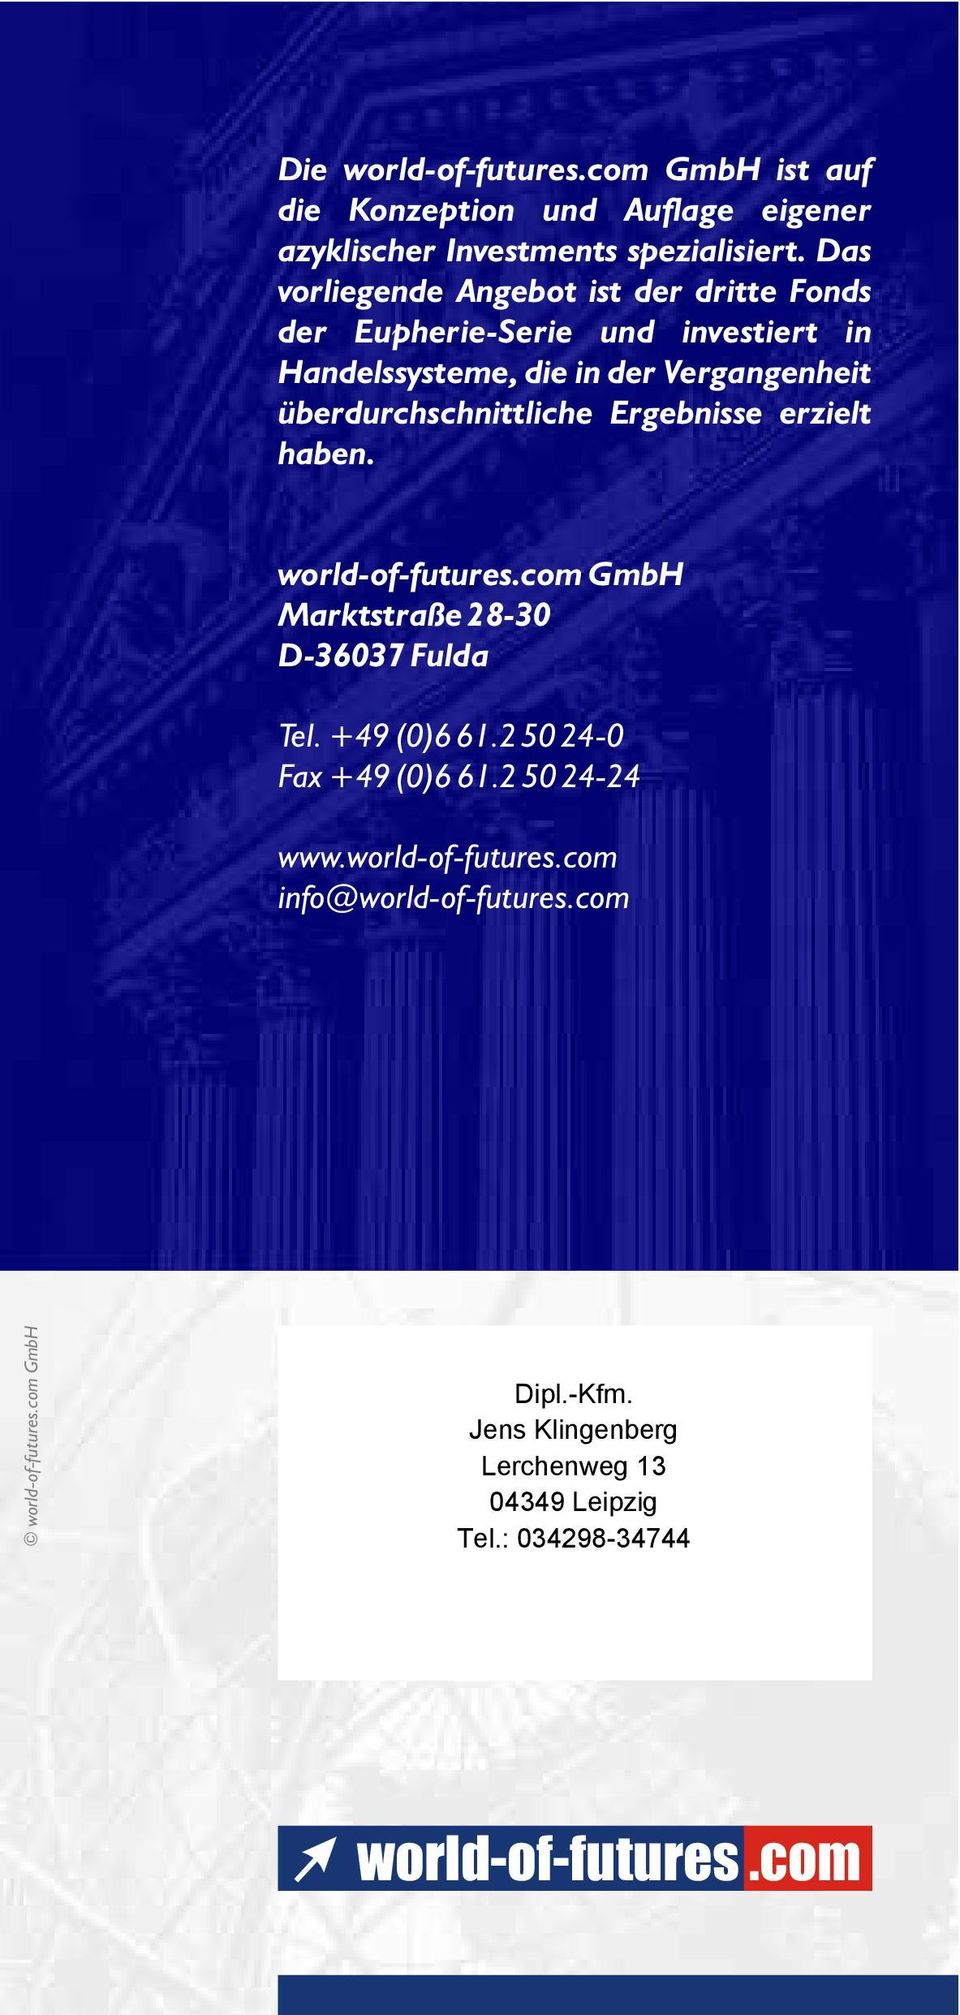 überdurchschnittliche Ergebnisse erzielt haben. world-of-futures.com GmbH Marktstraße 28-30 D-36037 Fulda Tel. +49 (0)6 61.